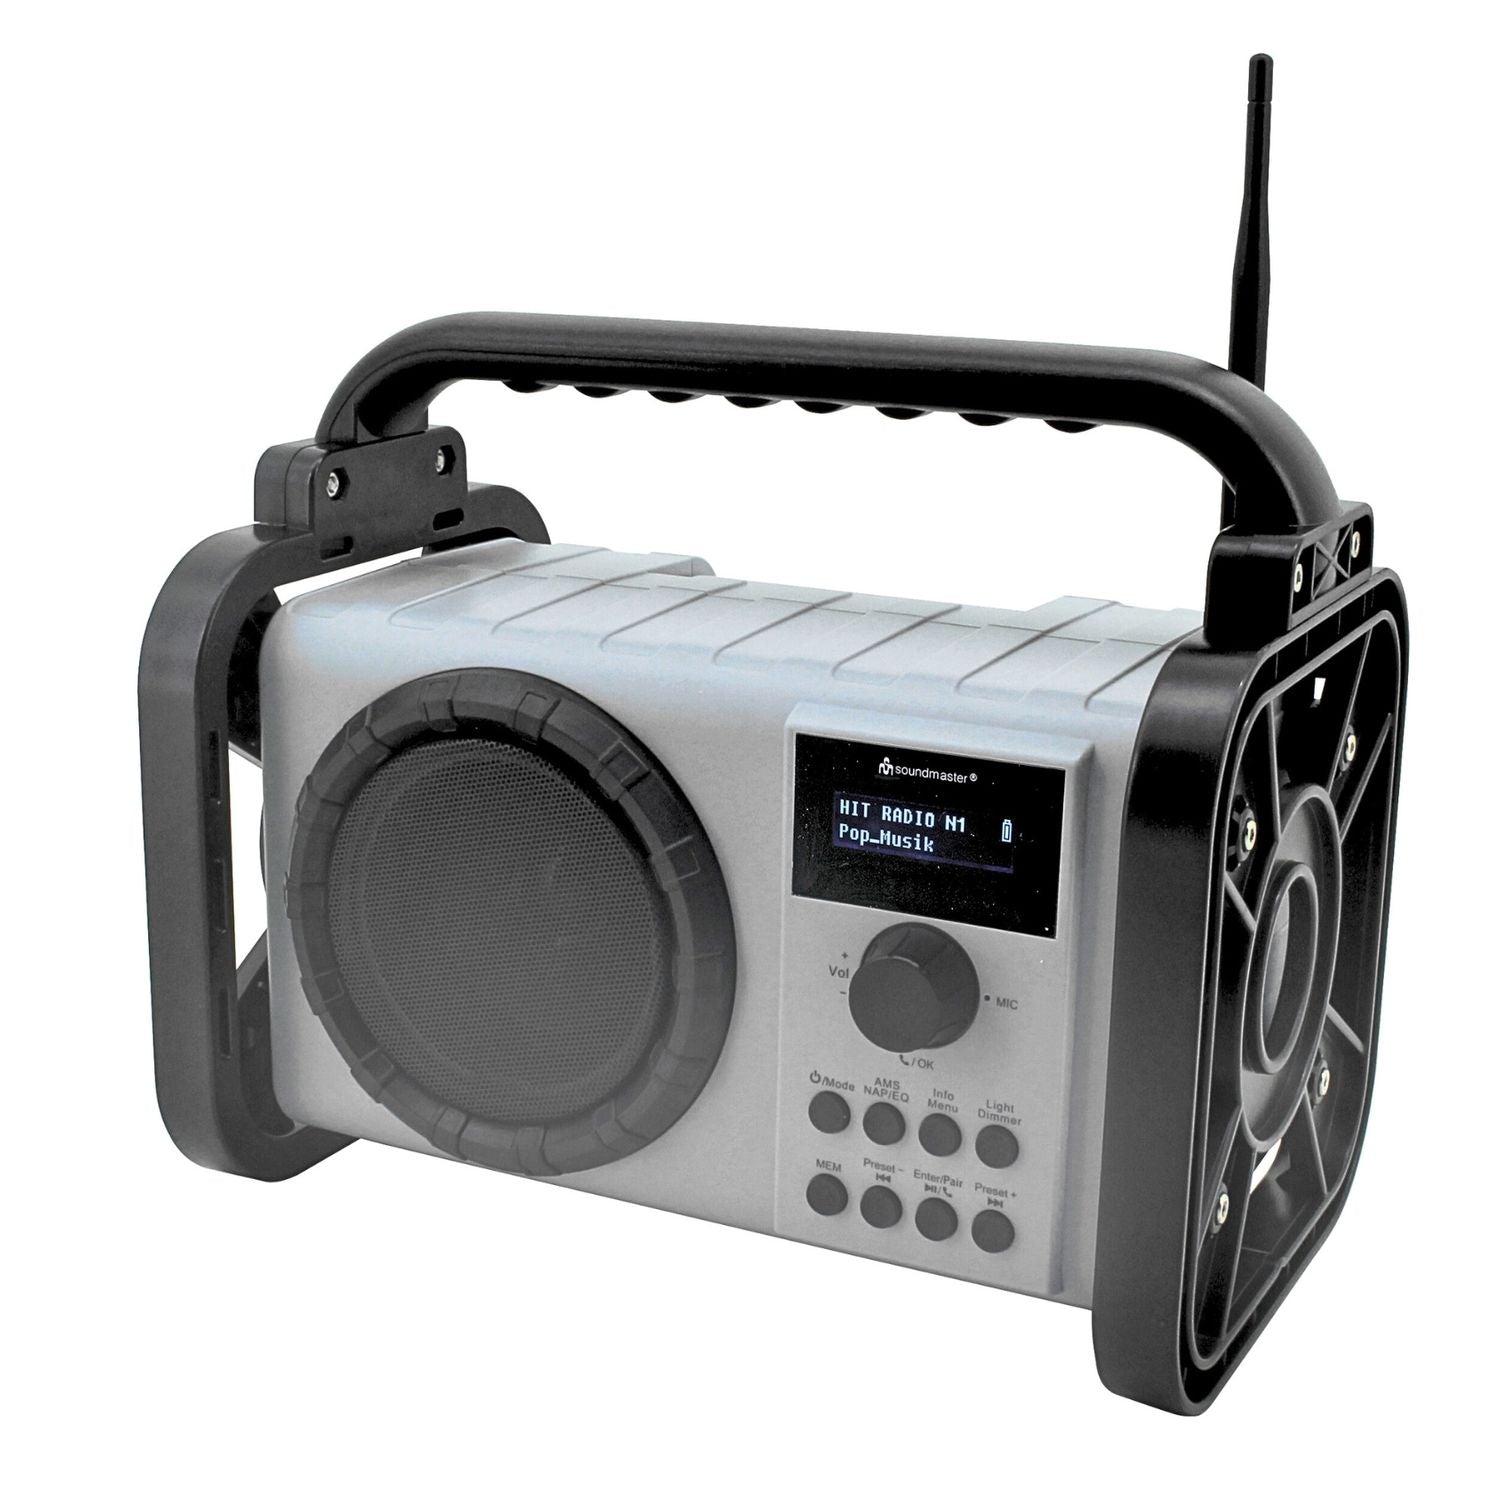 B-WARE Soundmaster DAB80SG Baustellenradio mit DAB+ UKW Bluetooth und Li-Ion Akku IP44 staub- und spritzwassergeschützt